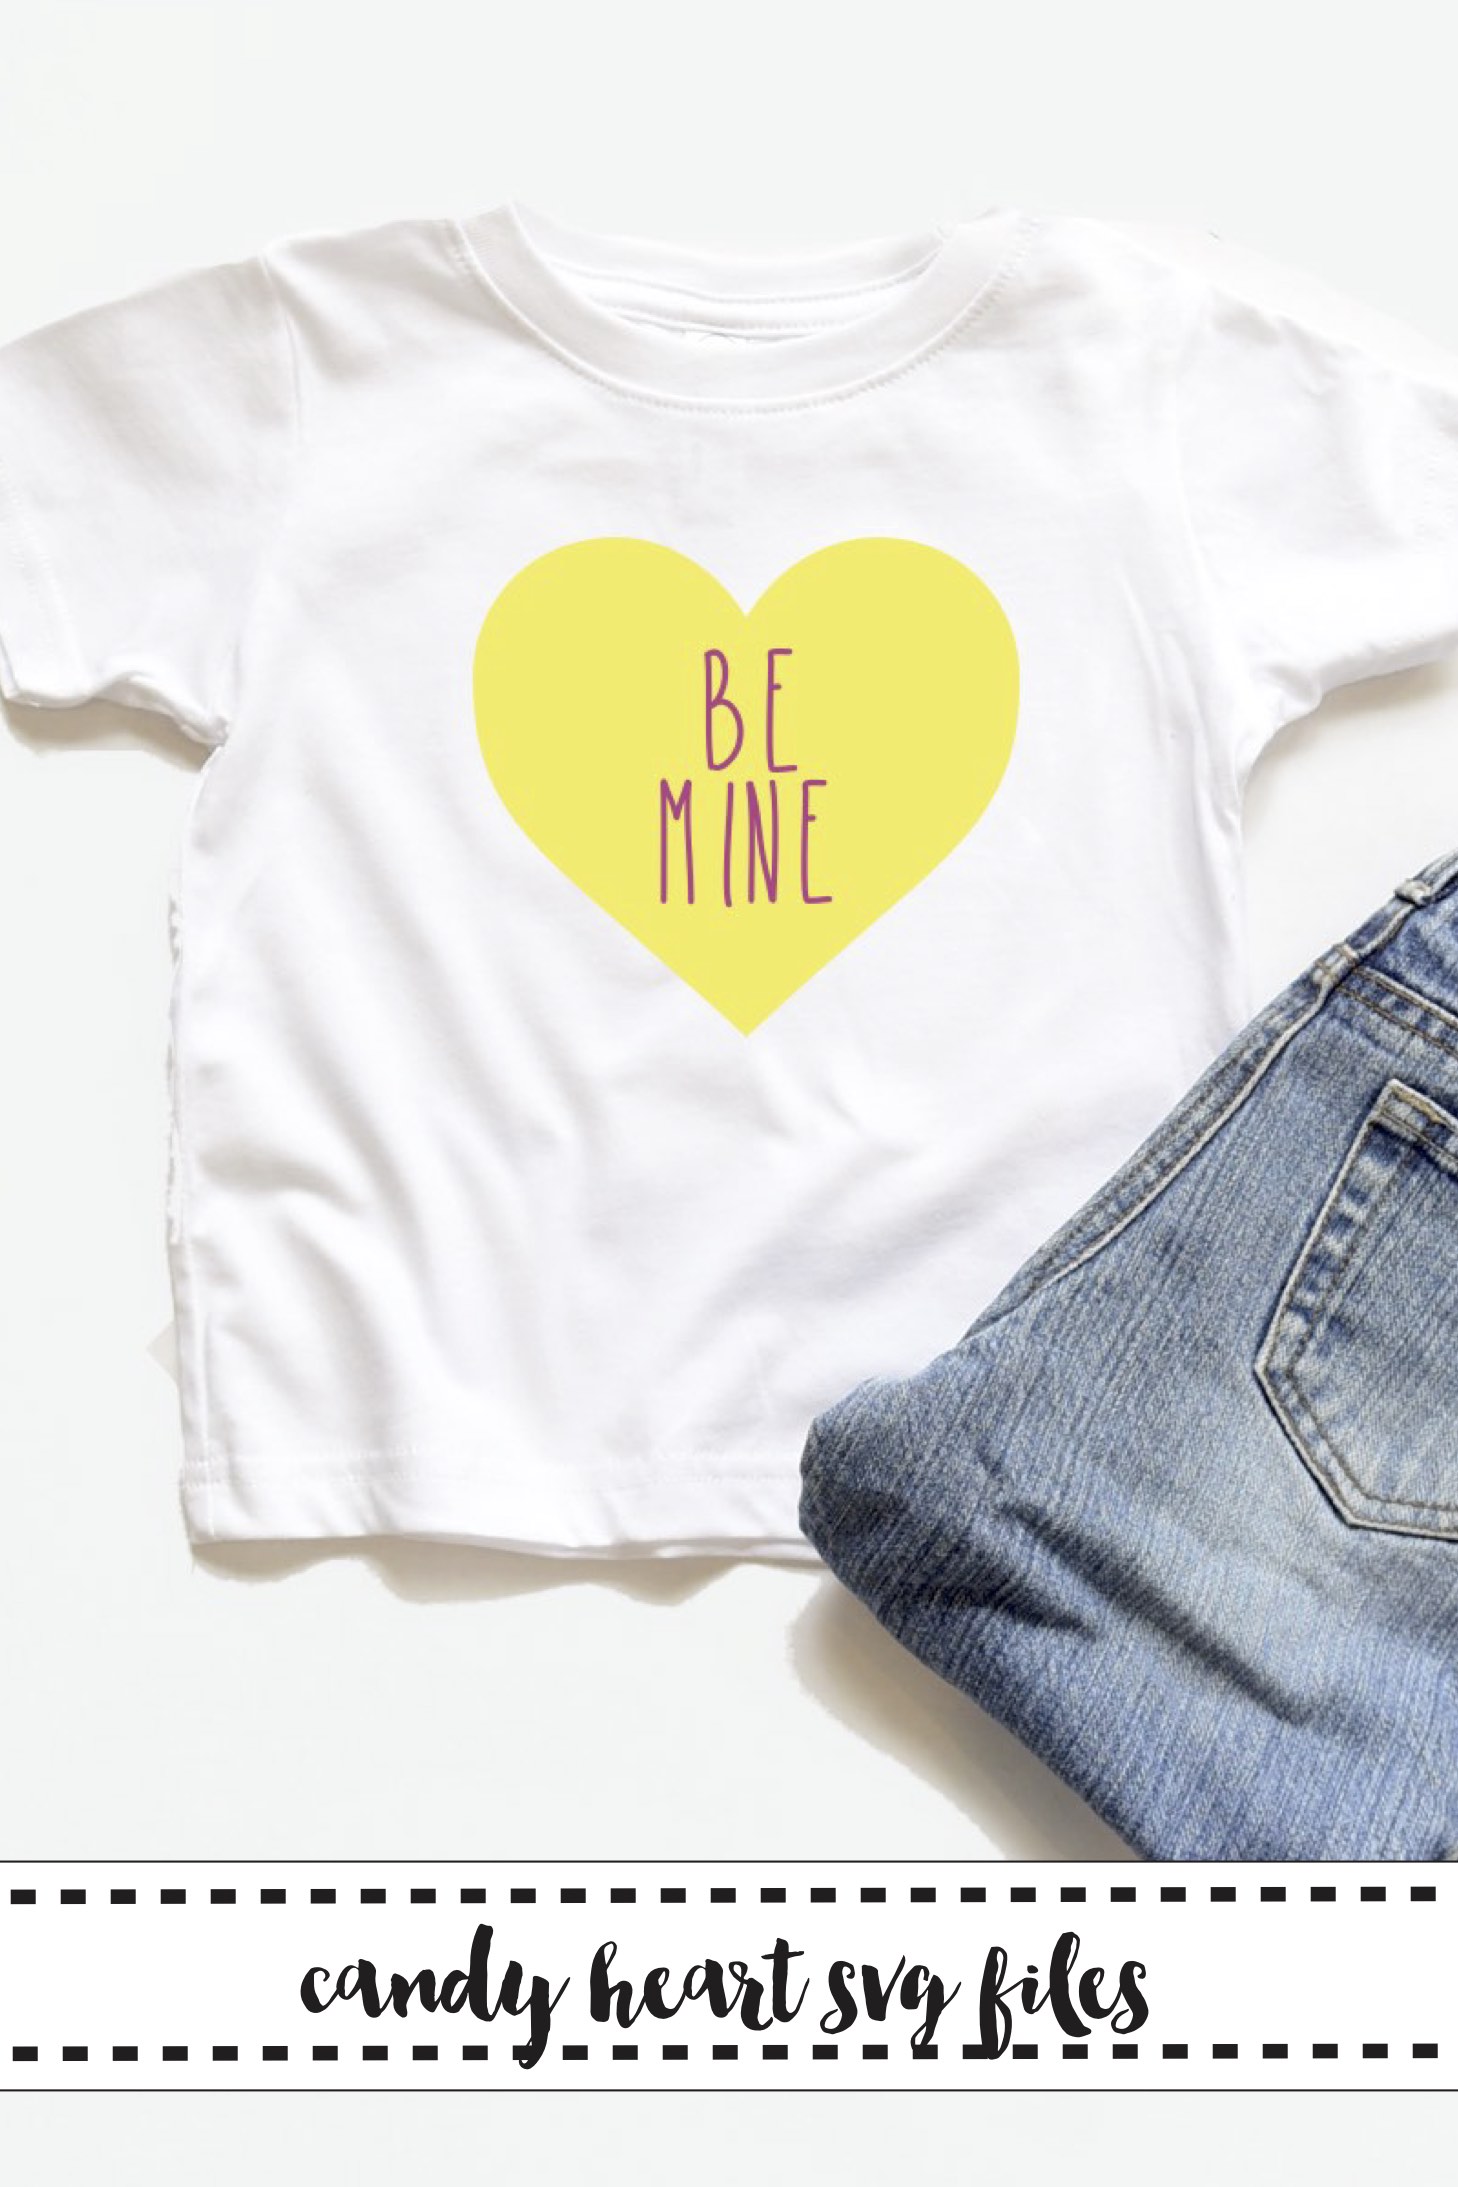 BE-MINE-Conversation-Heart-Shirt-Jeans